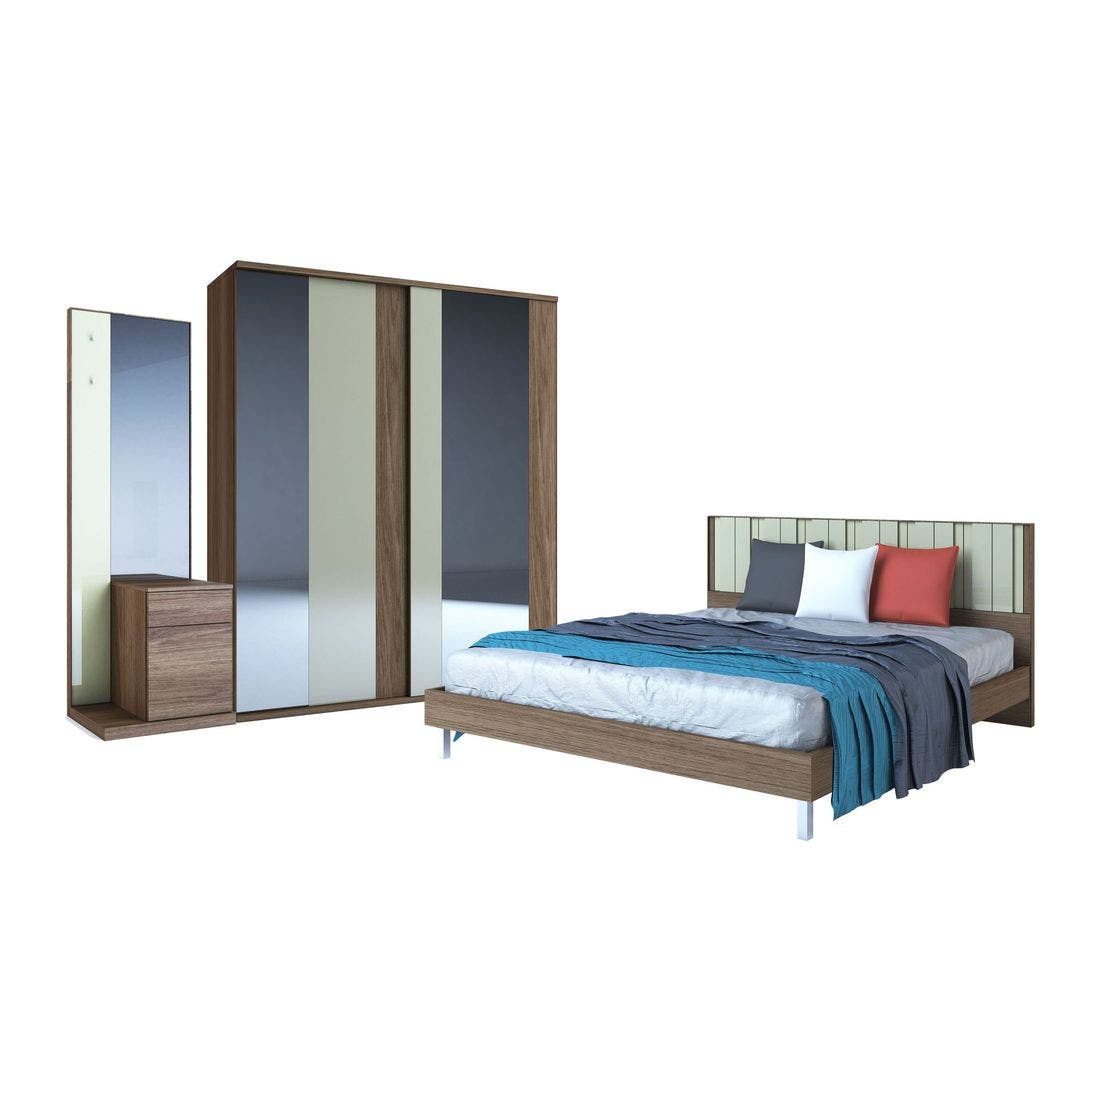 ชุดห้องนอน ชุดห้องนอนขนาด 6 ฟุต รุ่น Tazzina สีสีลายไม้ธรรมชาติ-SB Design Square